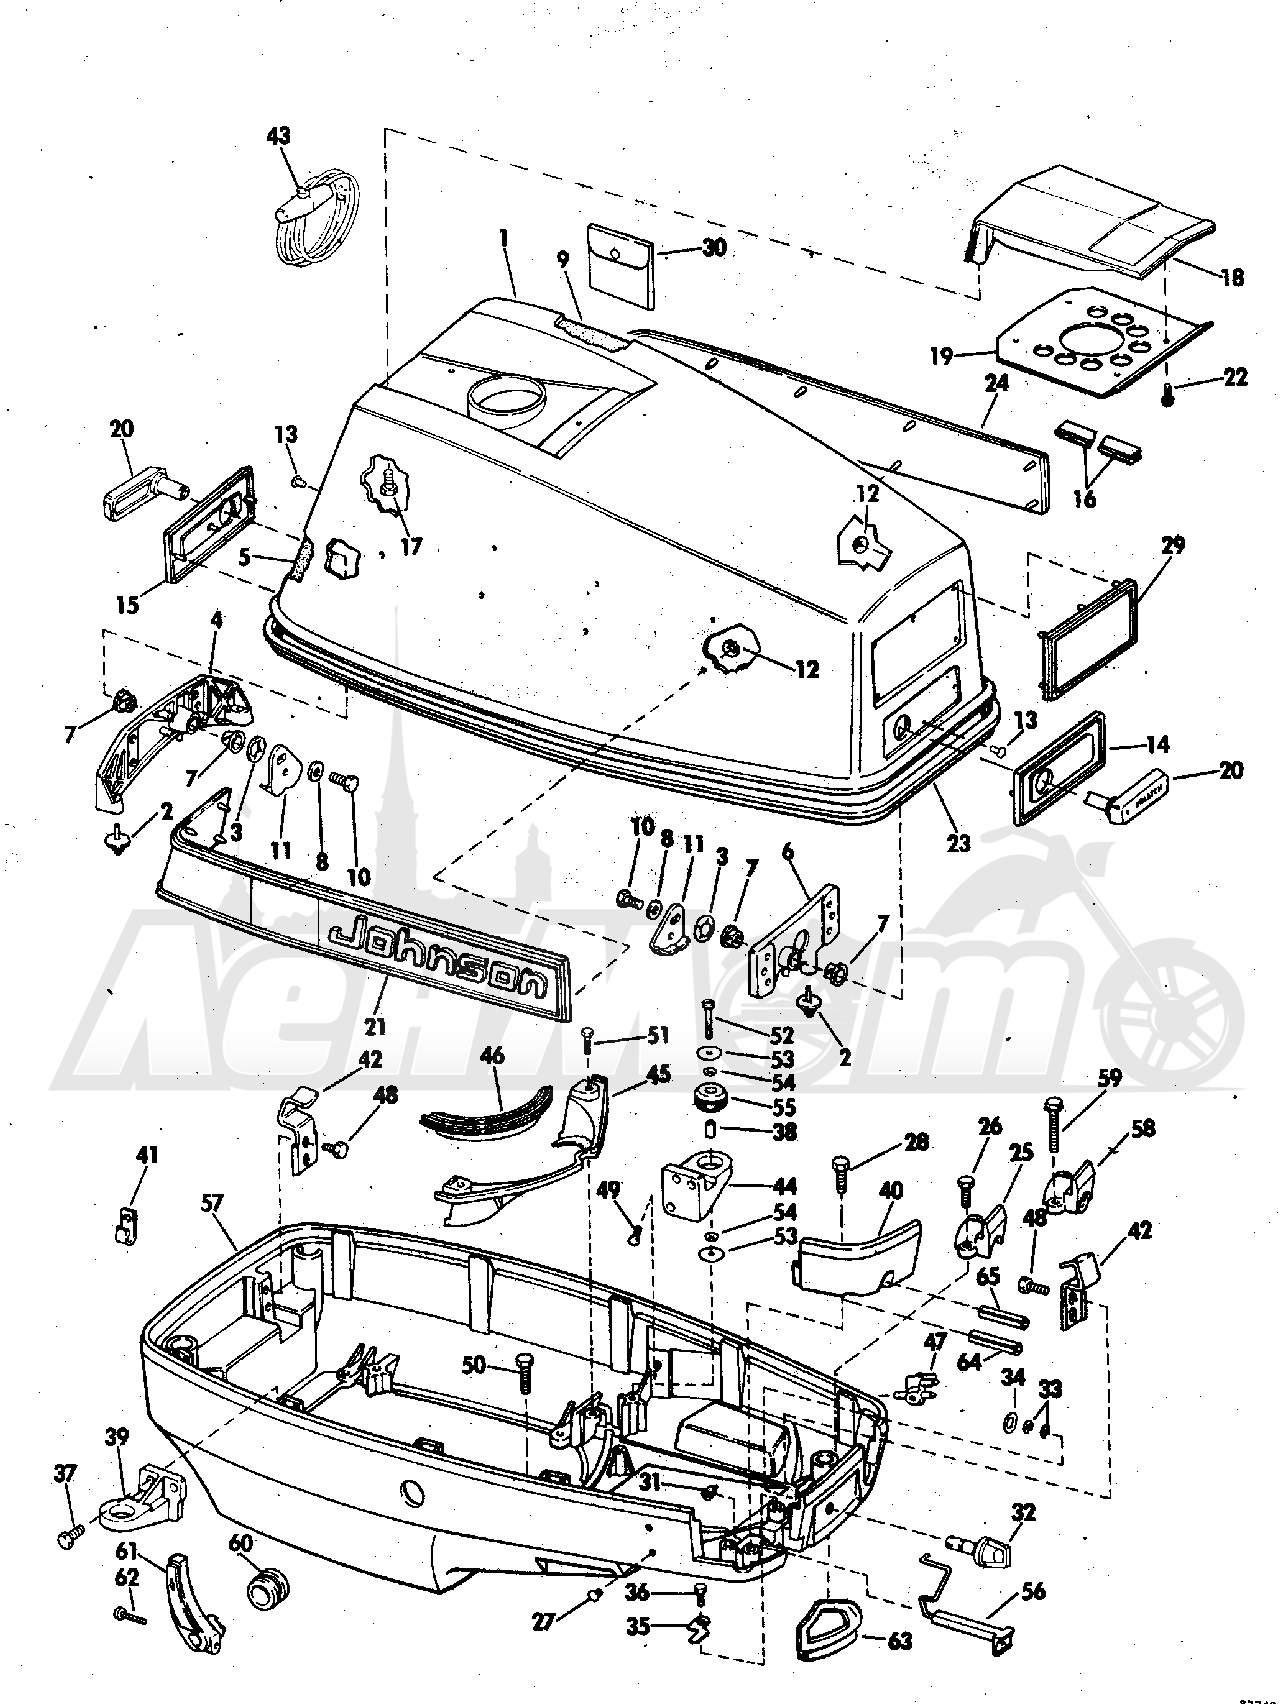 65esl_73r wiring diagram